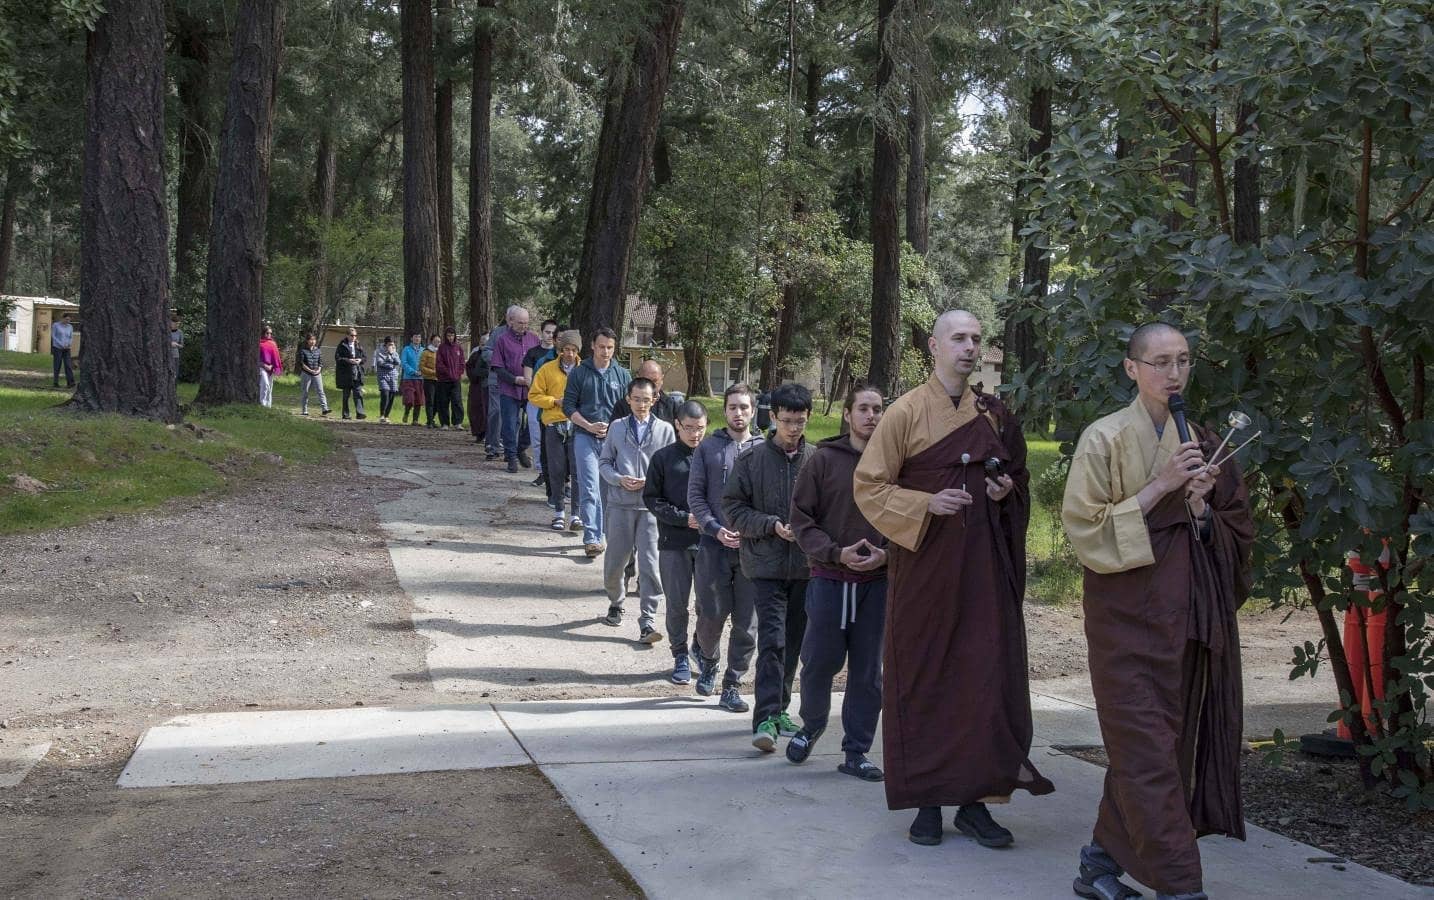 Ngôi trường Phật giáo trong lòng tu viện ở miền Tây Hoa Kỳ

